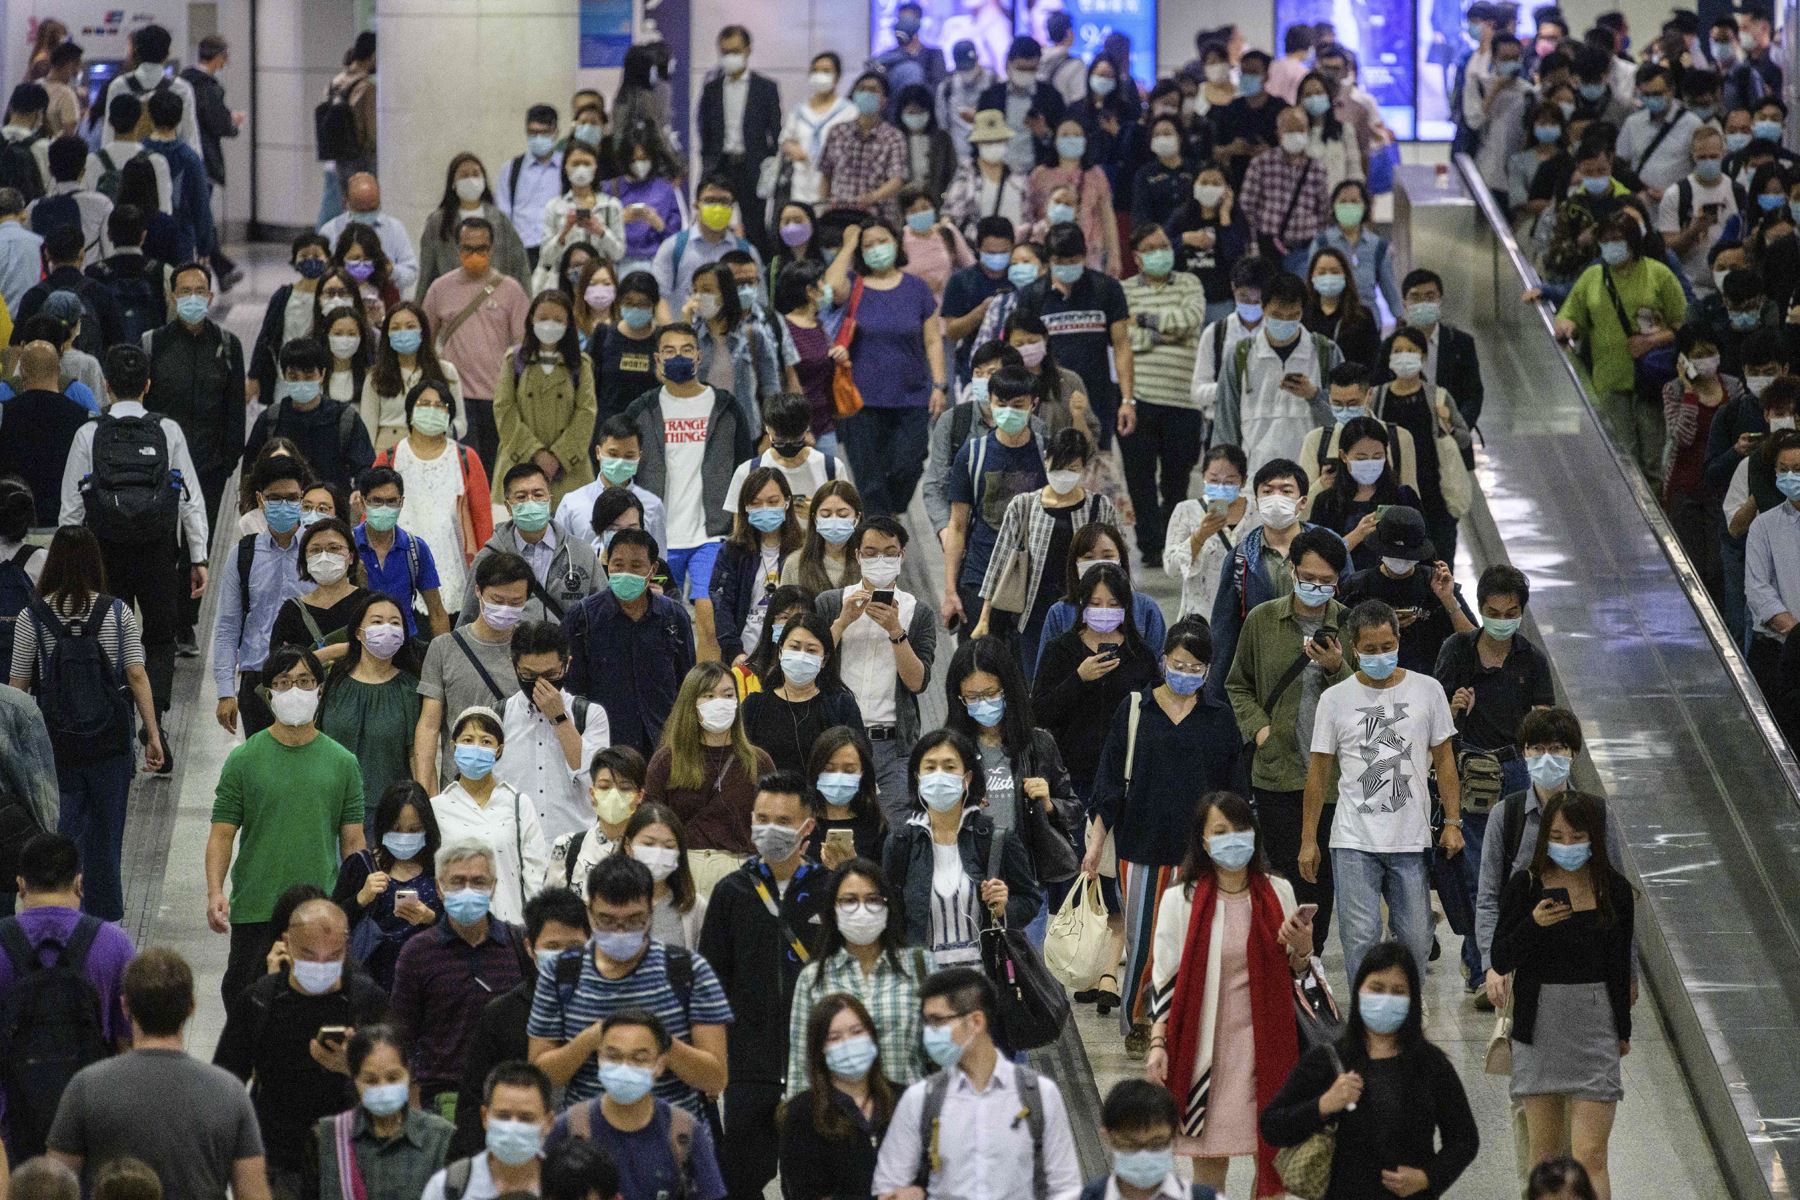 Los viajeros con mascarillas caminan en una estación de metro MTR en medio de la pandemia del coronavirus, en Hong Kong. Foto: AFP